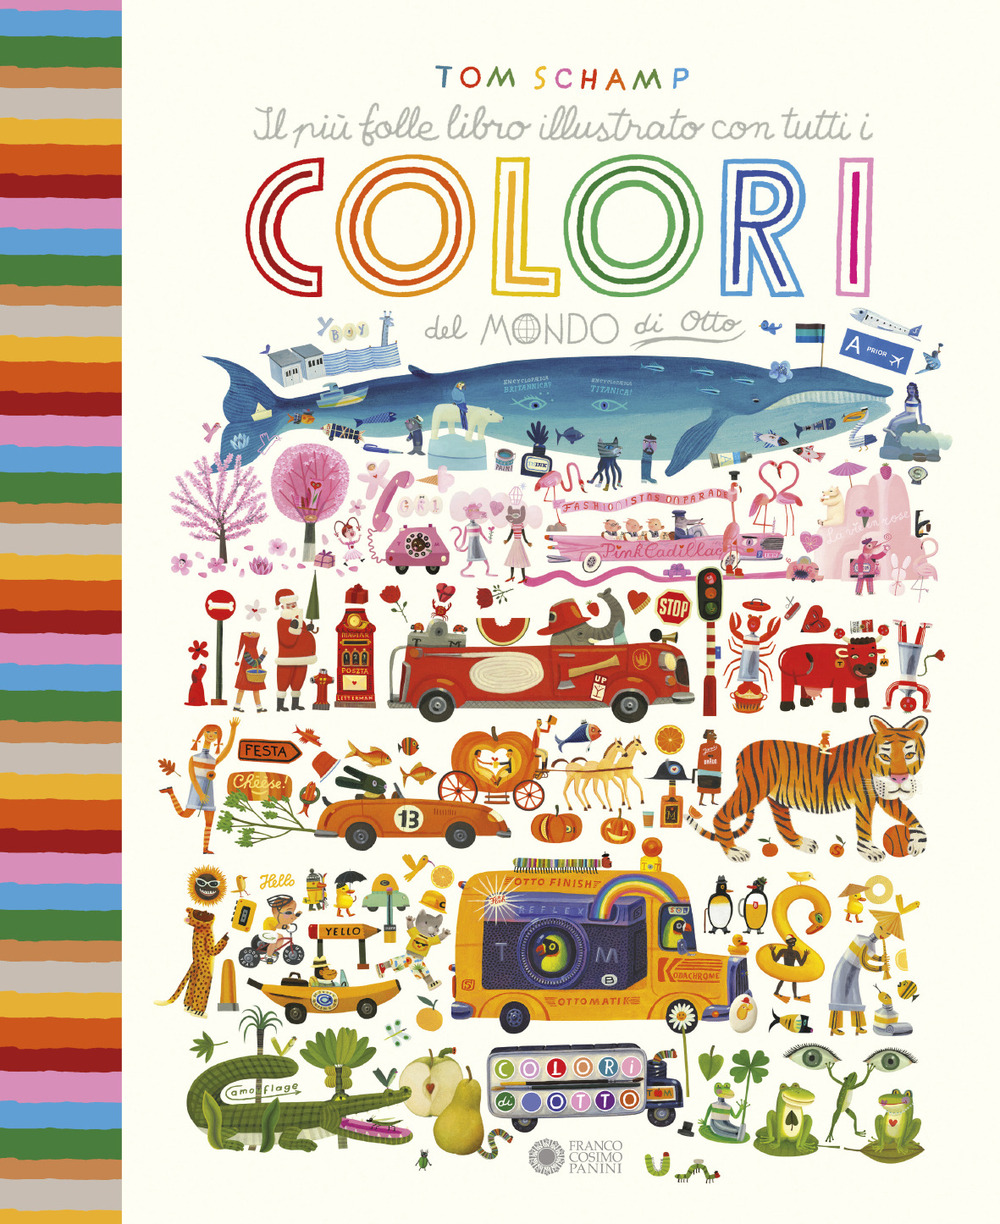 Il più folle libro illustrato con tutti i colori del mondo di Otto. Ediz. a colori